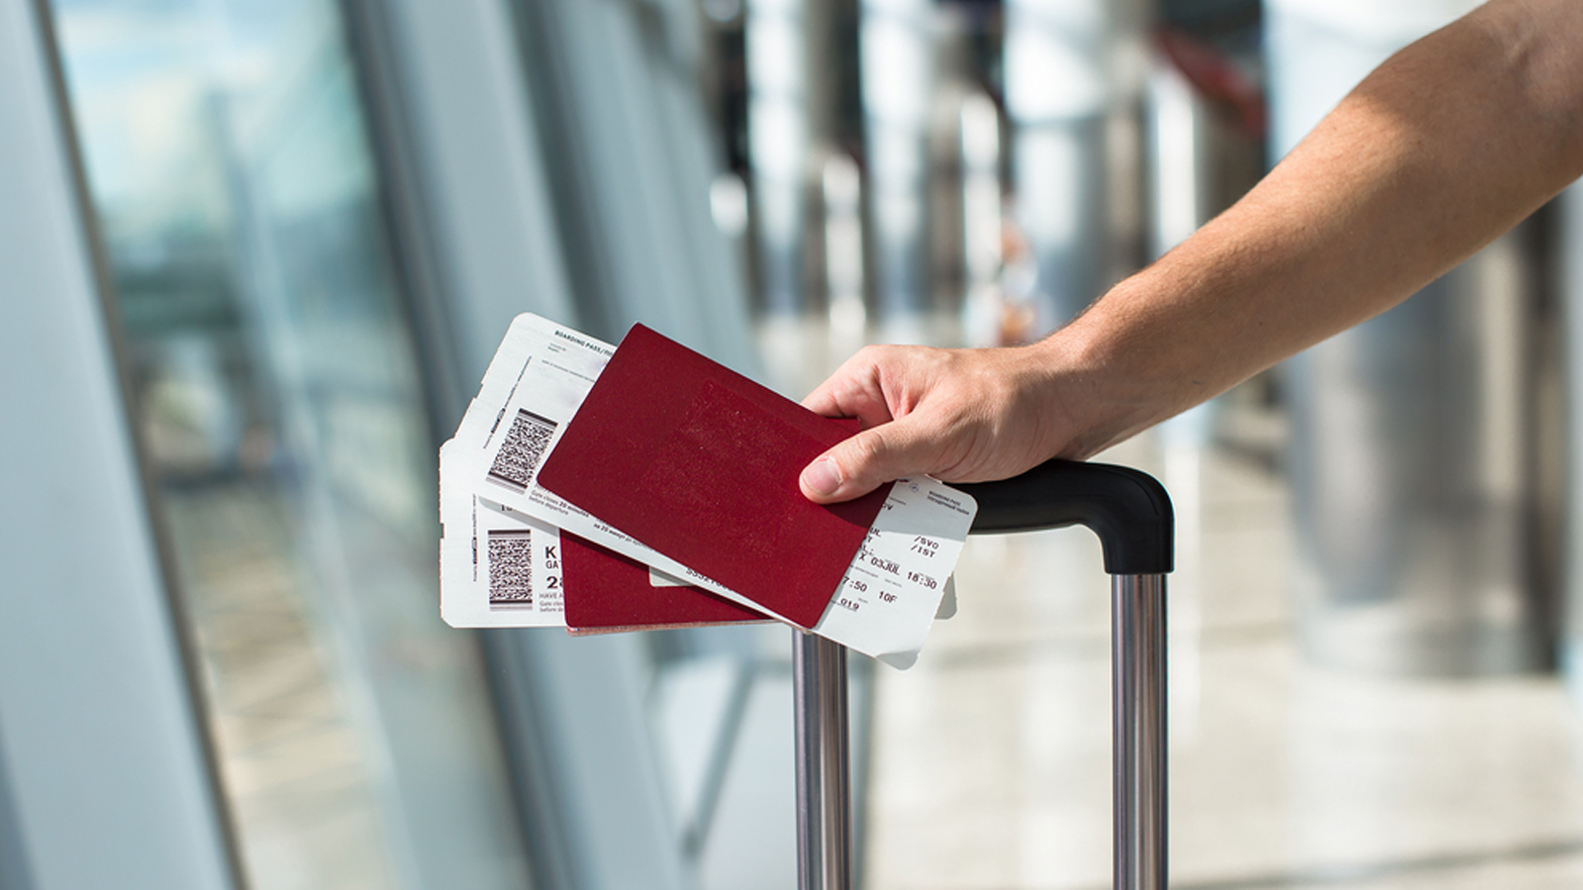 La idea detrás del nuevo ticket es darle más autonomía y libertad a los viajeros (Shutterstock)